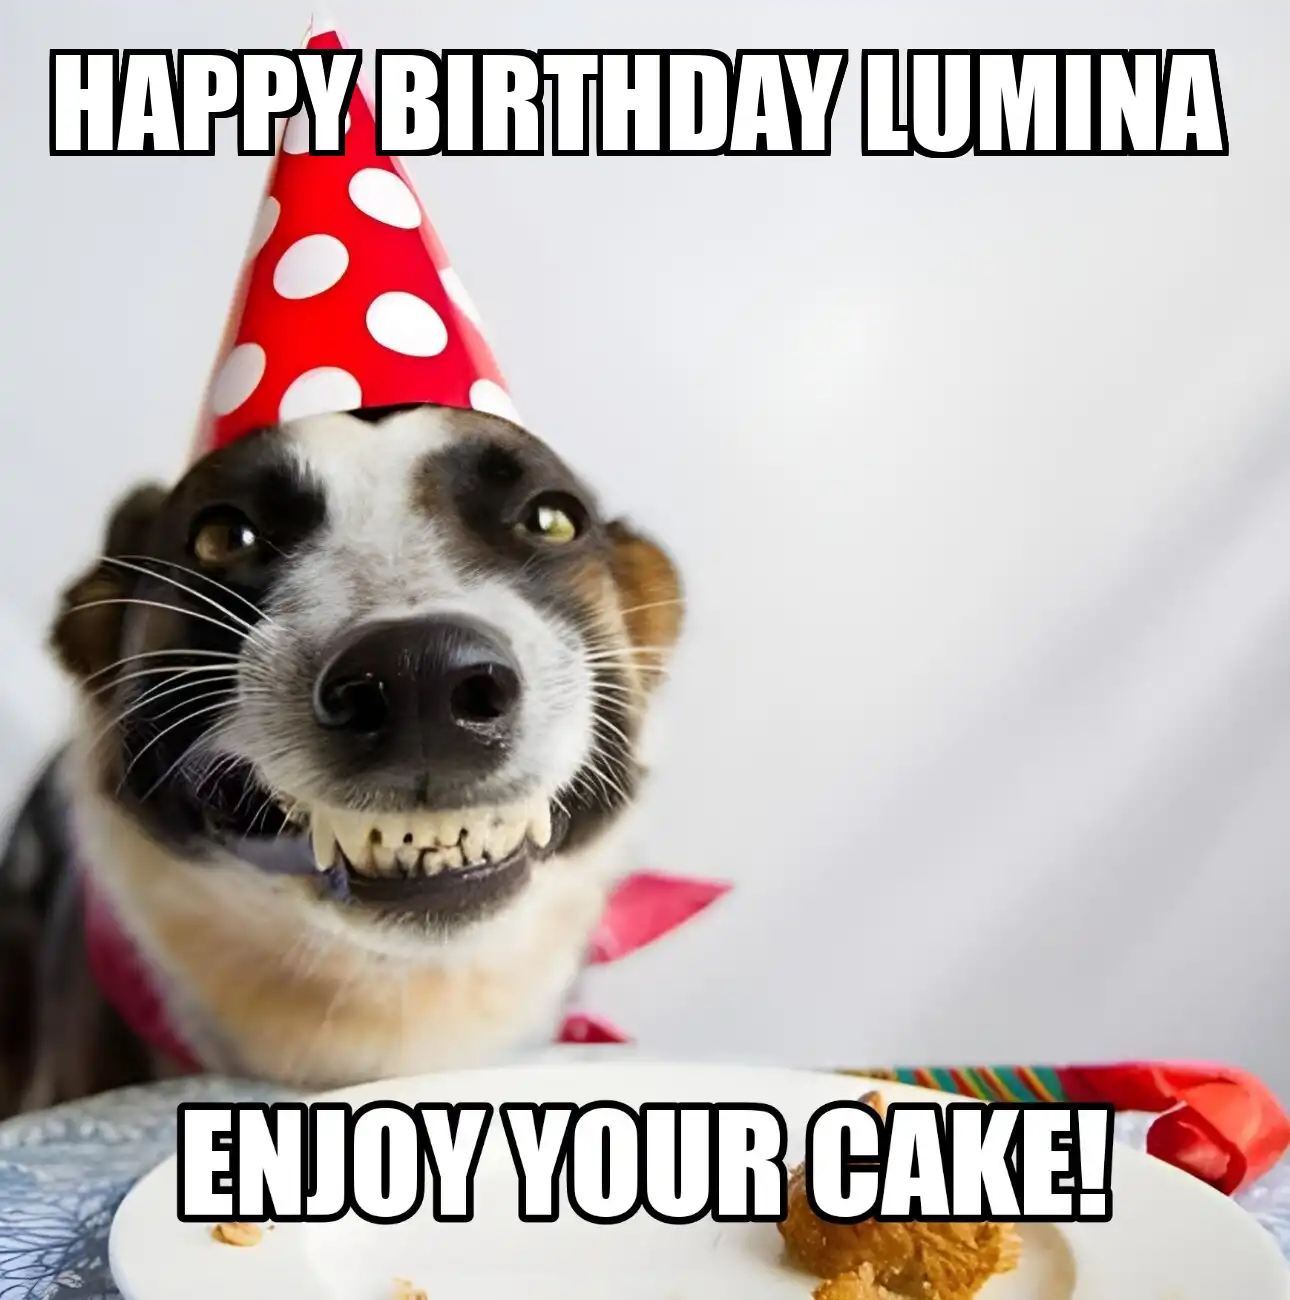 Happy Birthday Lumina Enjoy Your Cake Dog Meme